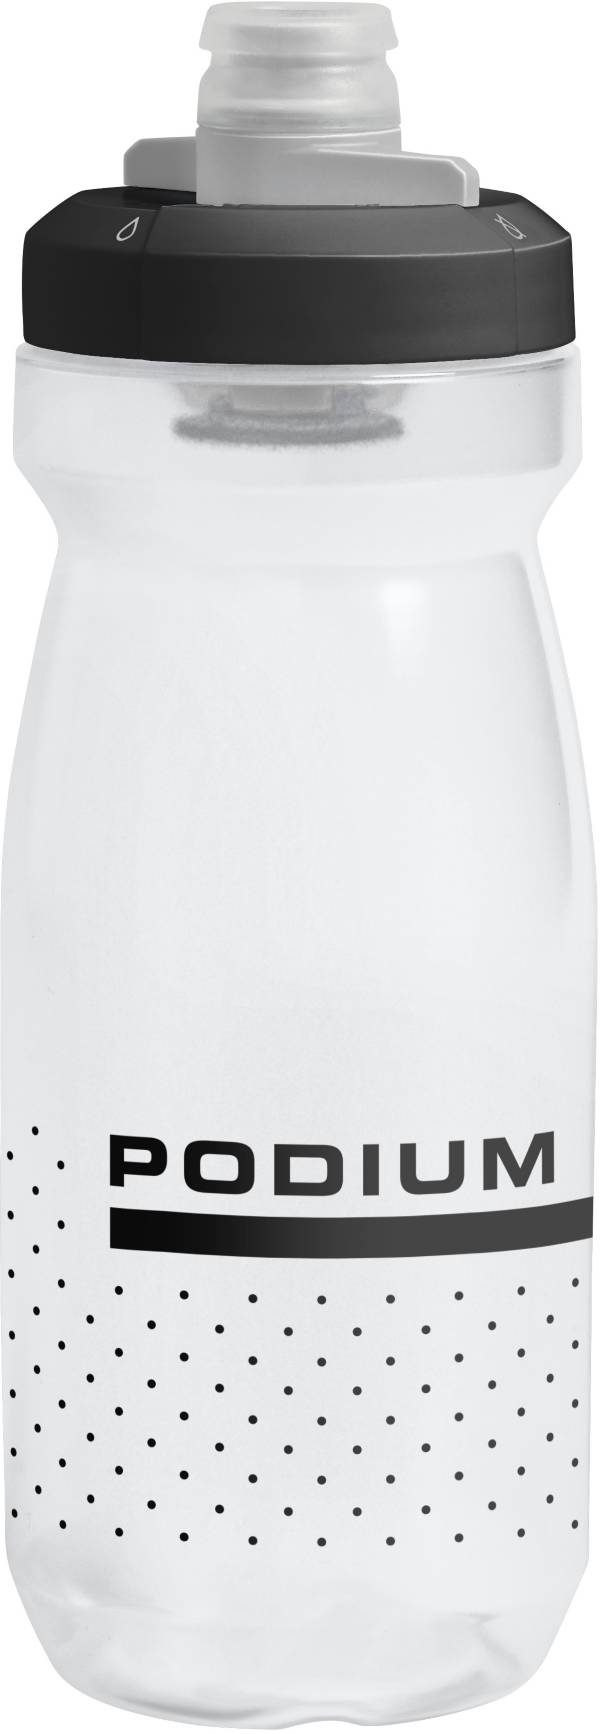 CamelBak Podium 21 oz. Water Bottle product image